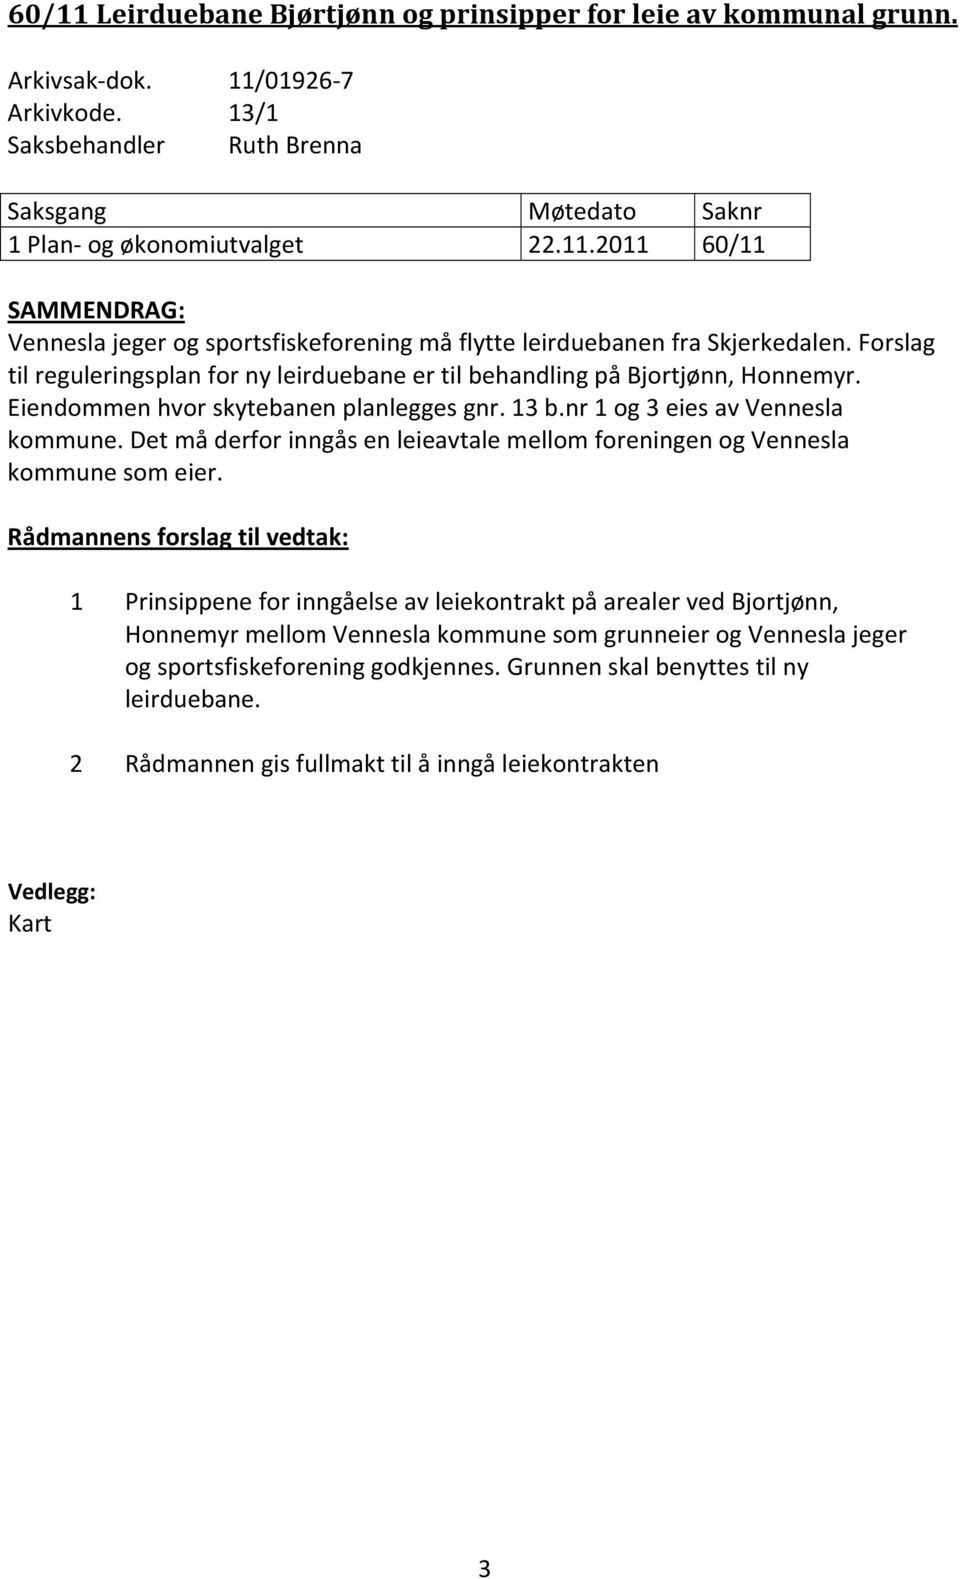 Det må derfor inngås en leieavtale mellom foreningen og Vennesla kommune som eier.